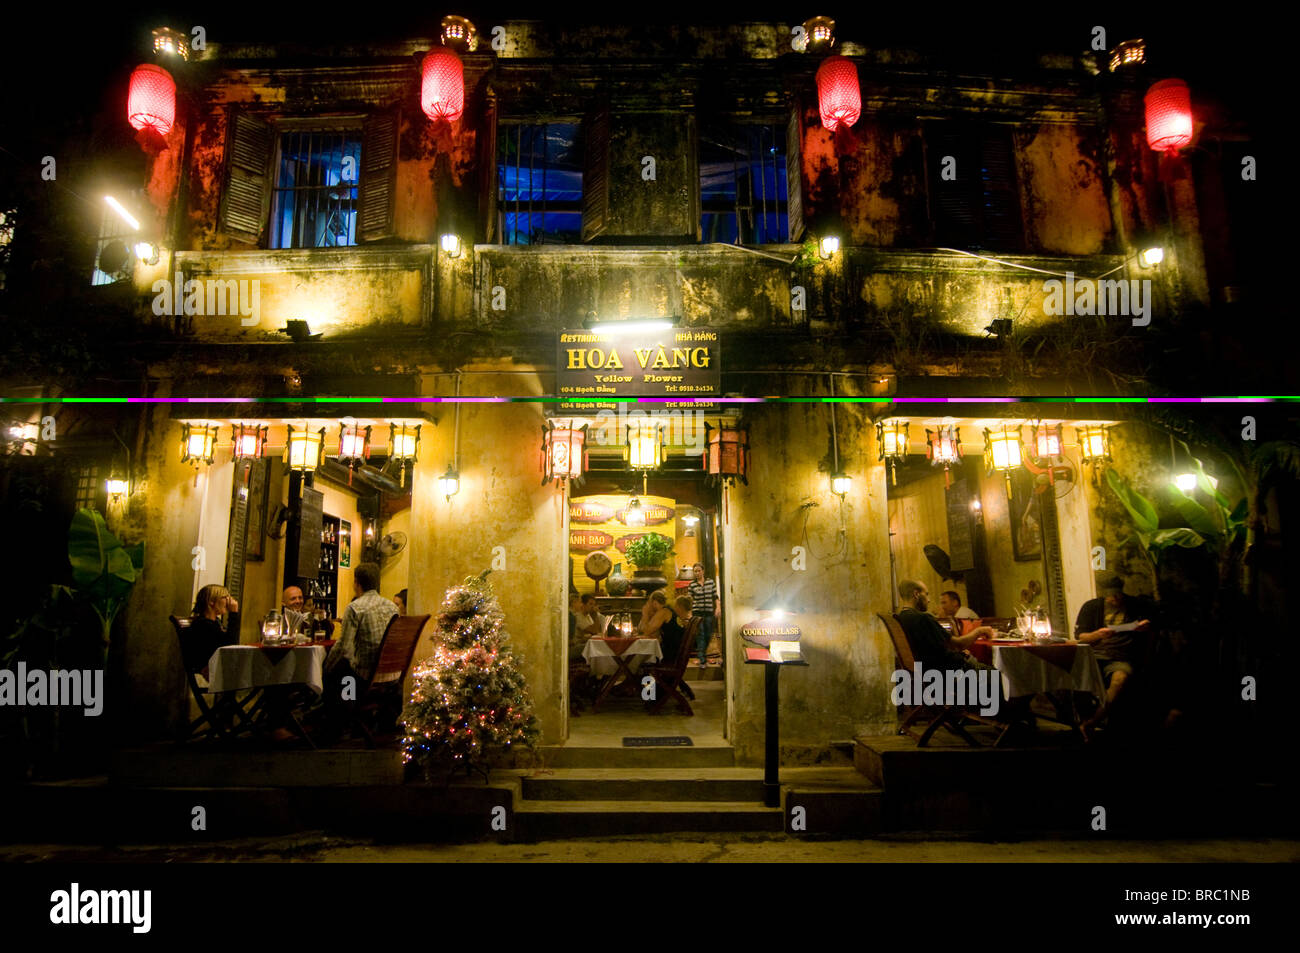 Photo de nuit de maisons coloniales, Hoi An, Vietnam, l'Indochine, l'ASOA Banque D'Images